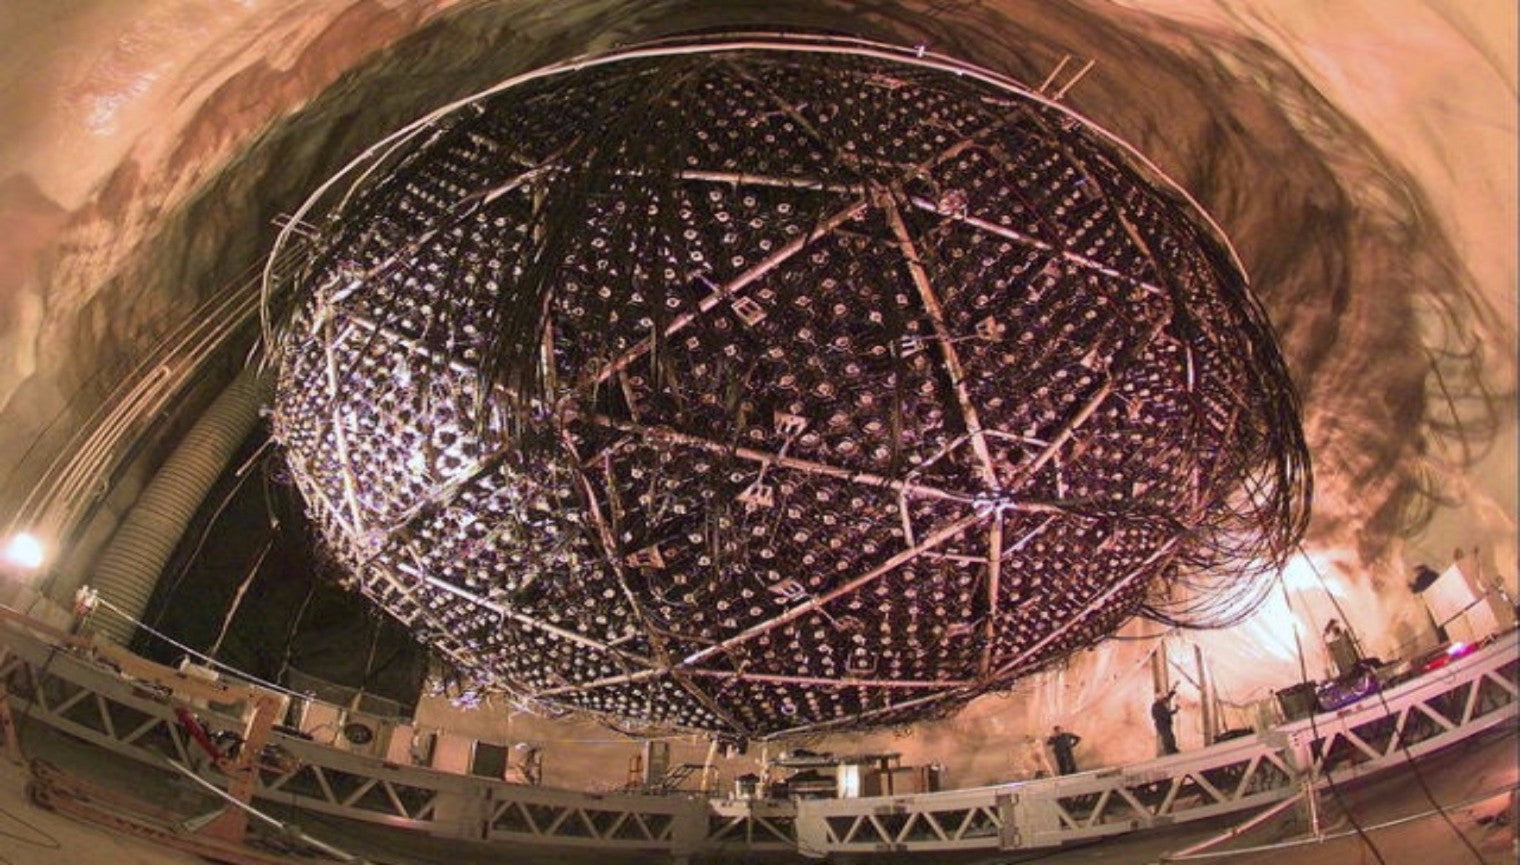 Where Did All the Neutrinos from the Sun Go?